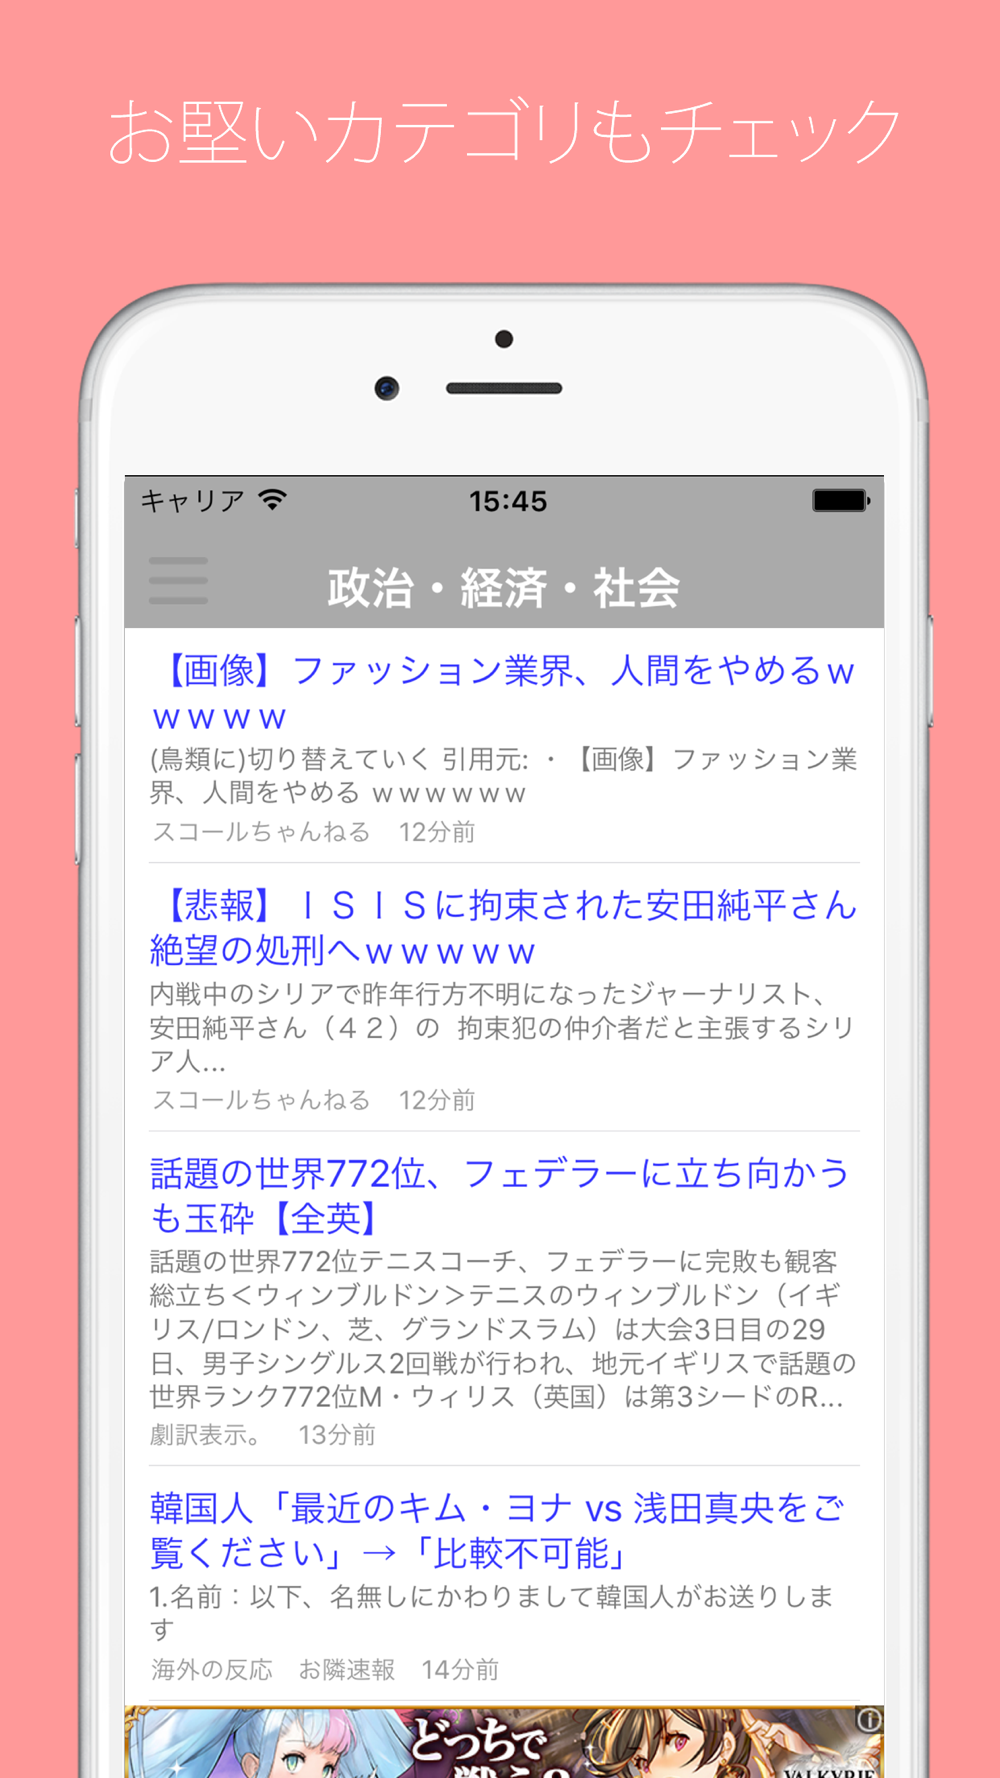 まとめニュース ニュースや芸能情報の2chまとめサイト無料アプリ Free Download App For Iphone Steprimo Com